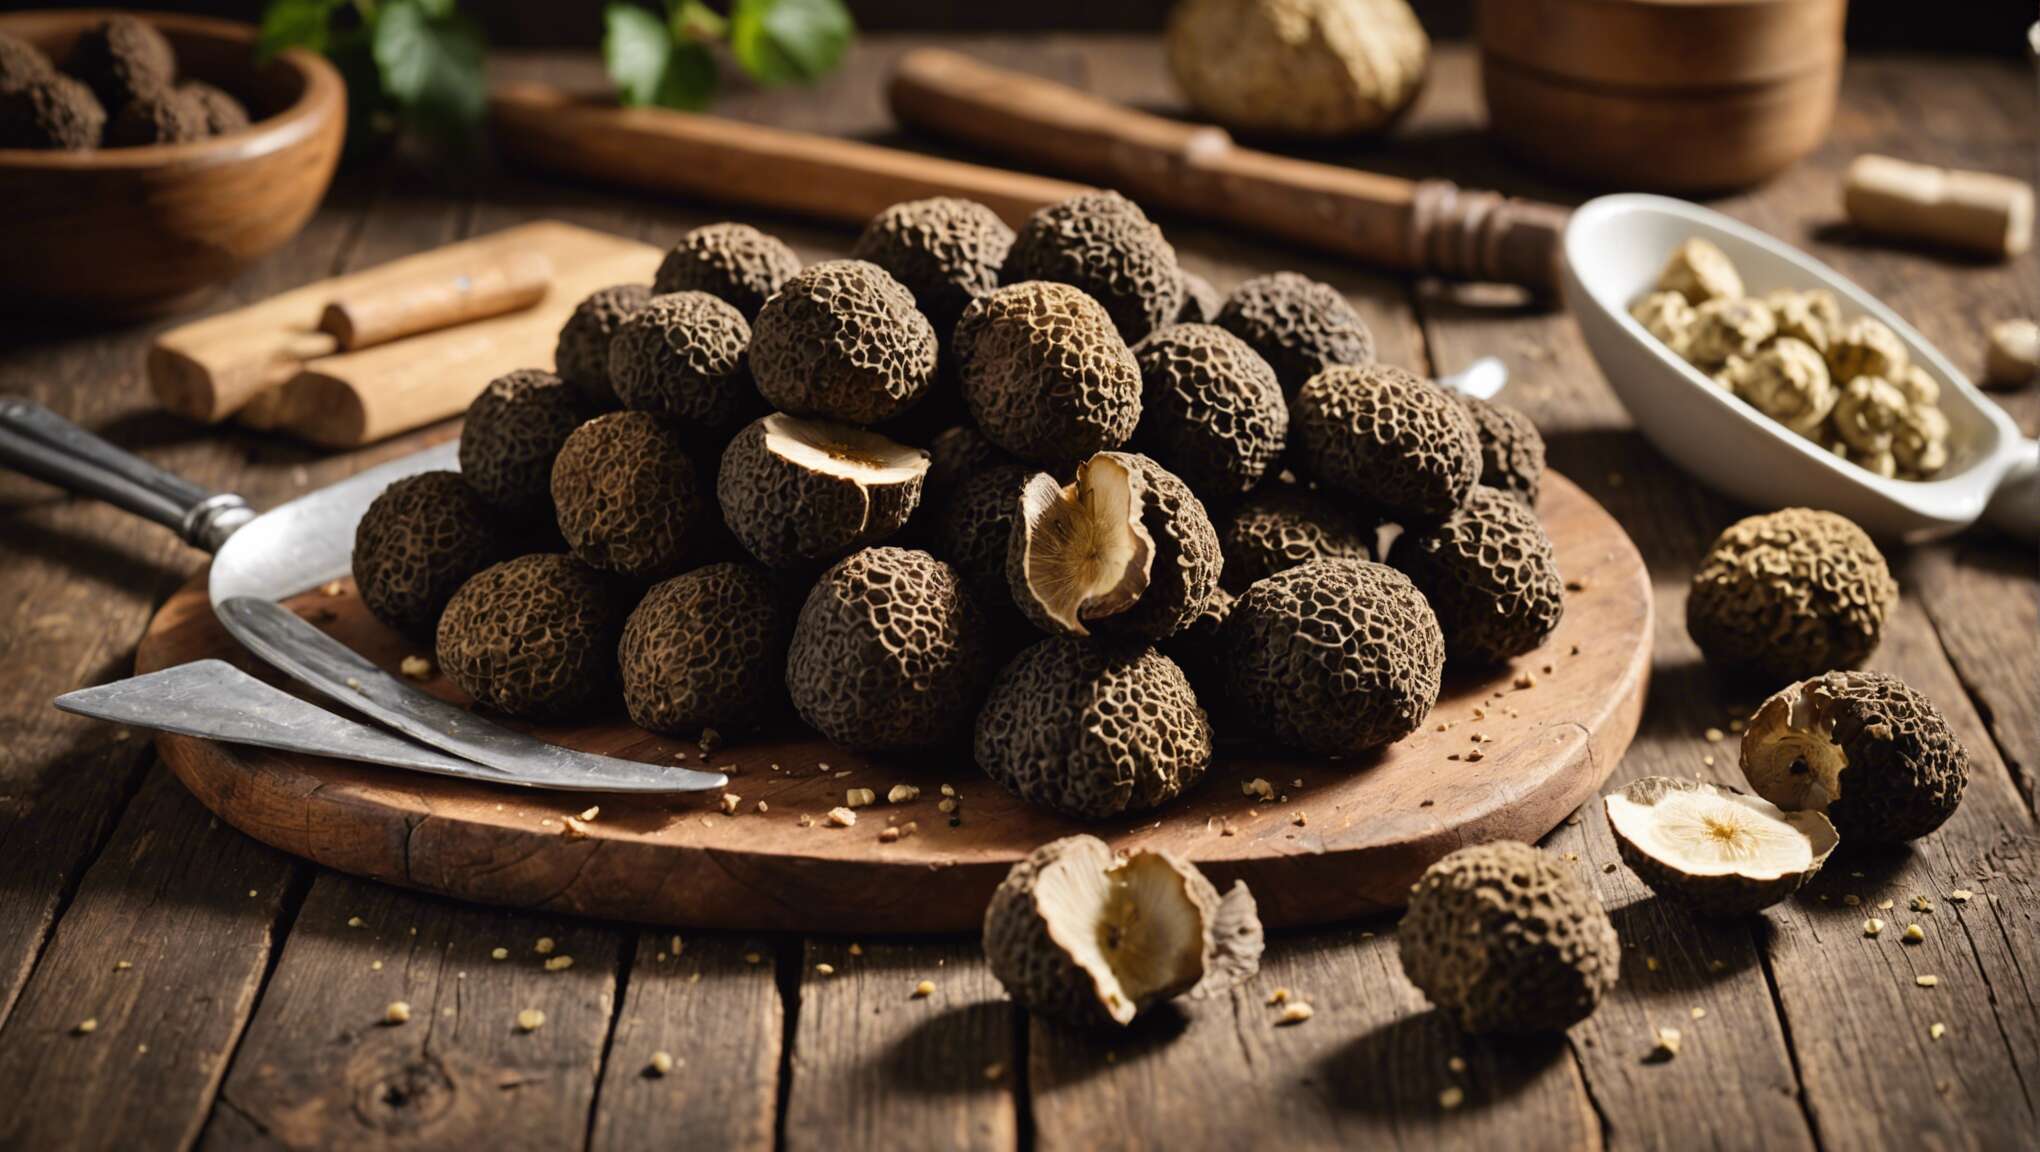 Conservation et préparation : les meilleures pratiques pour sublimer la truffe